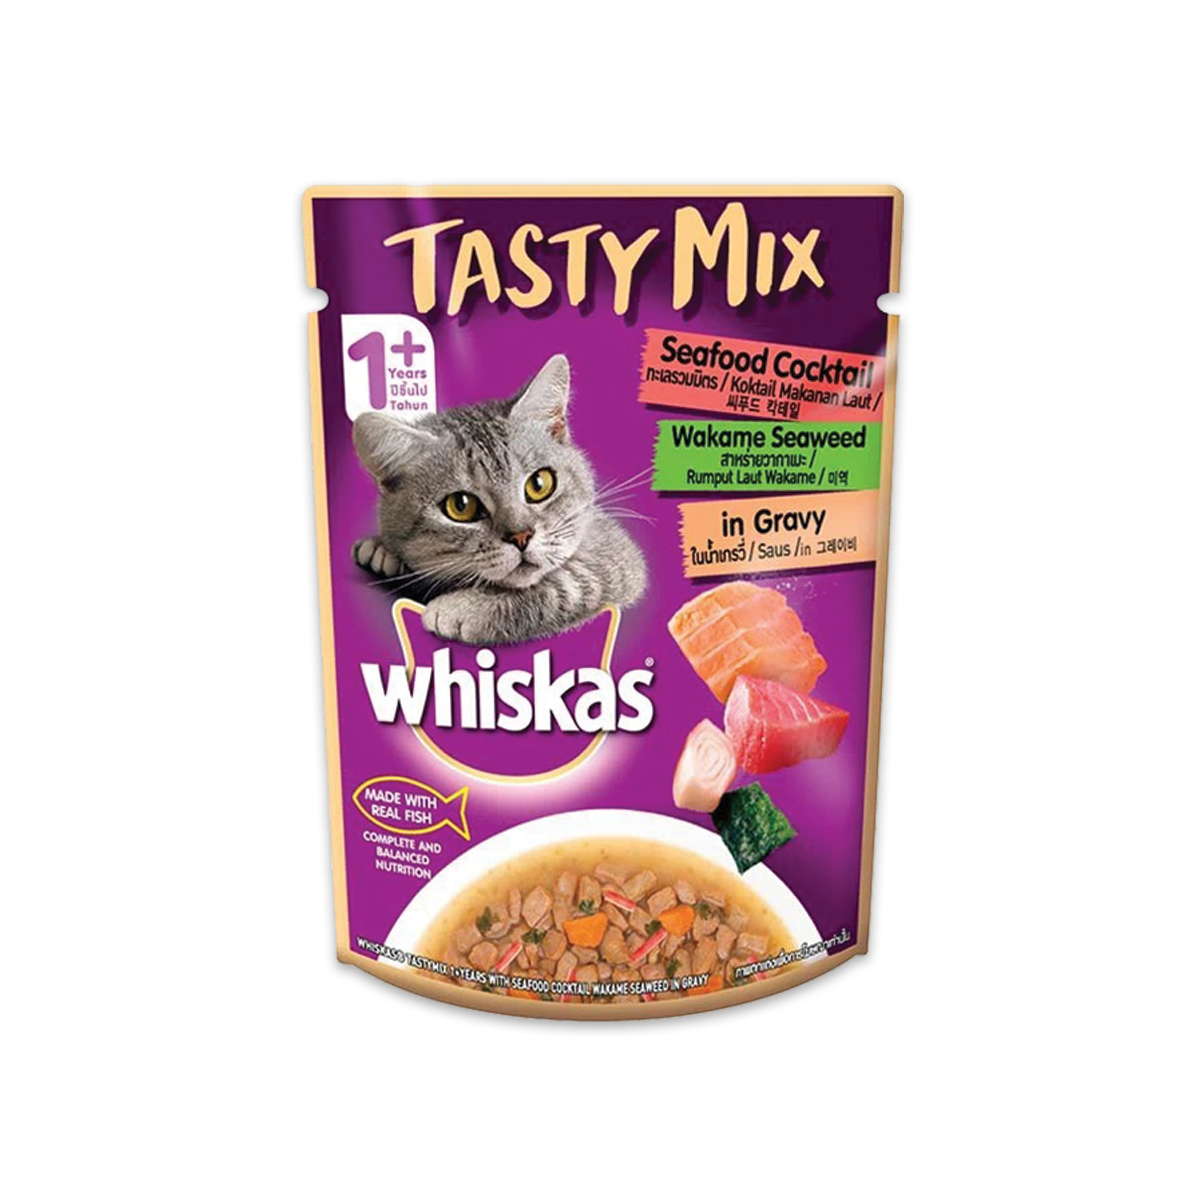 Whiskas Tastymix วิสกัส เทสตี้มิกซ์ อาหารเปียกแมว รสทะเลรวมมิตร สาหร่ายในน้ำเกรวี่ 70 กรัม